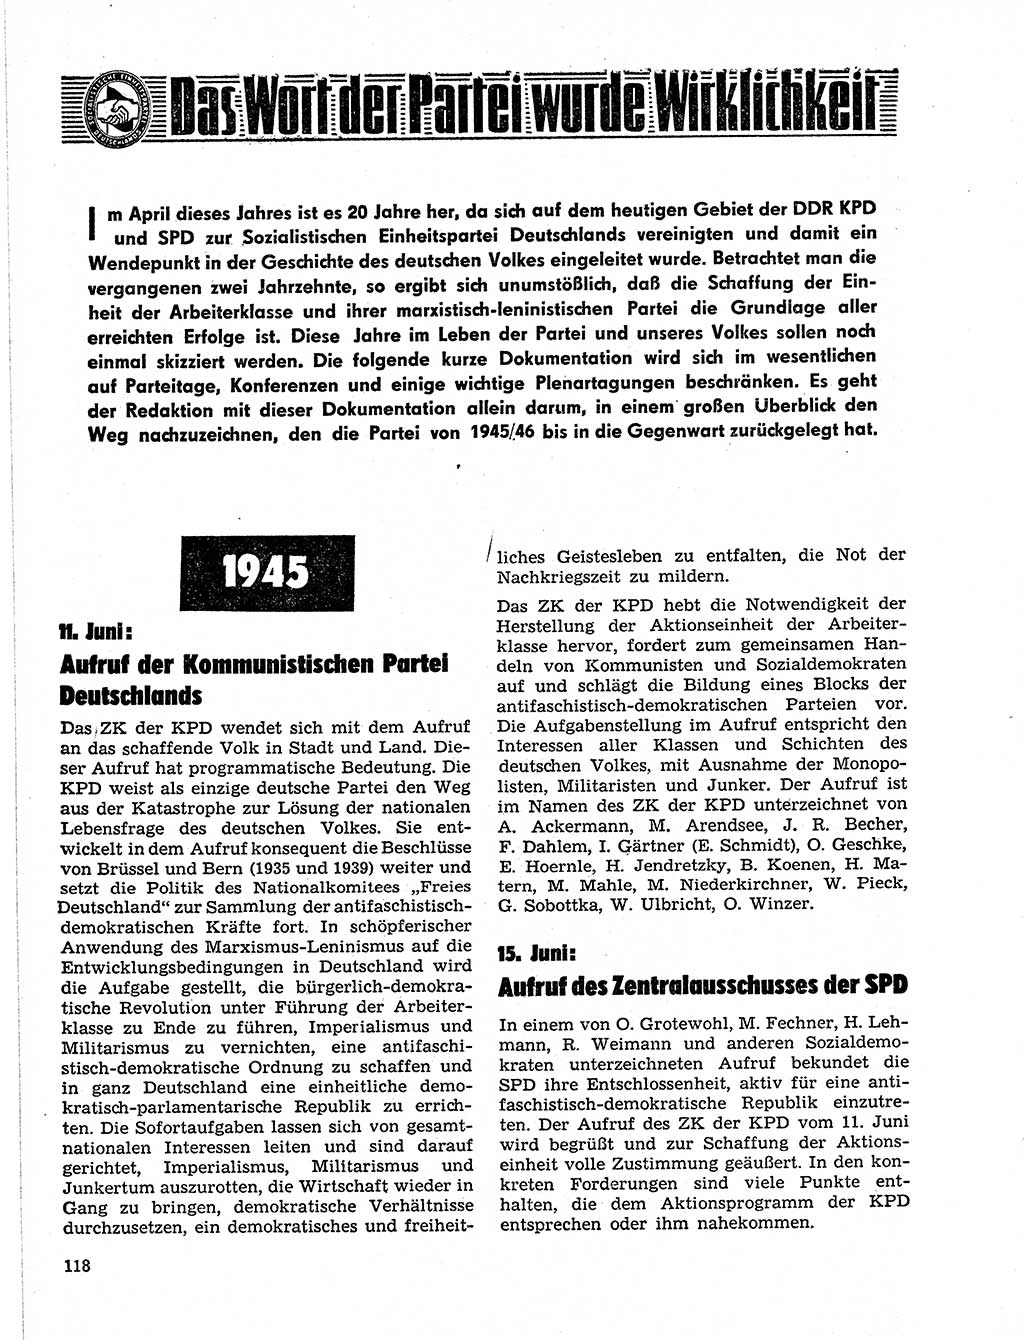 Neuer Weg (NW), Organ des Zentralkomitees (ZK) der SED (Sozialistische Einheitspartei Deutschlands) für Fragen des Parteilebens, 21. Jahrgang [Deutsche Demokratische Republik (DDR)] 1966, Seite 118 (NW ZK SED DDR 1966, S. 118)